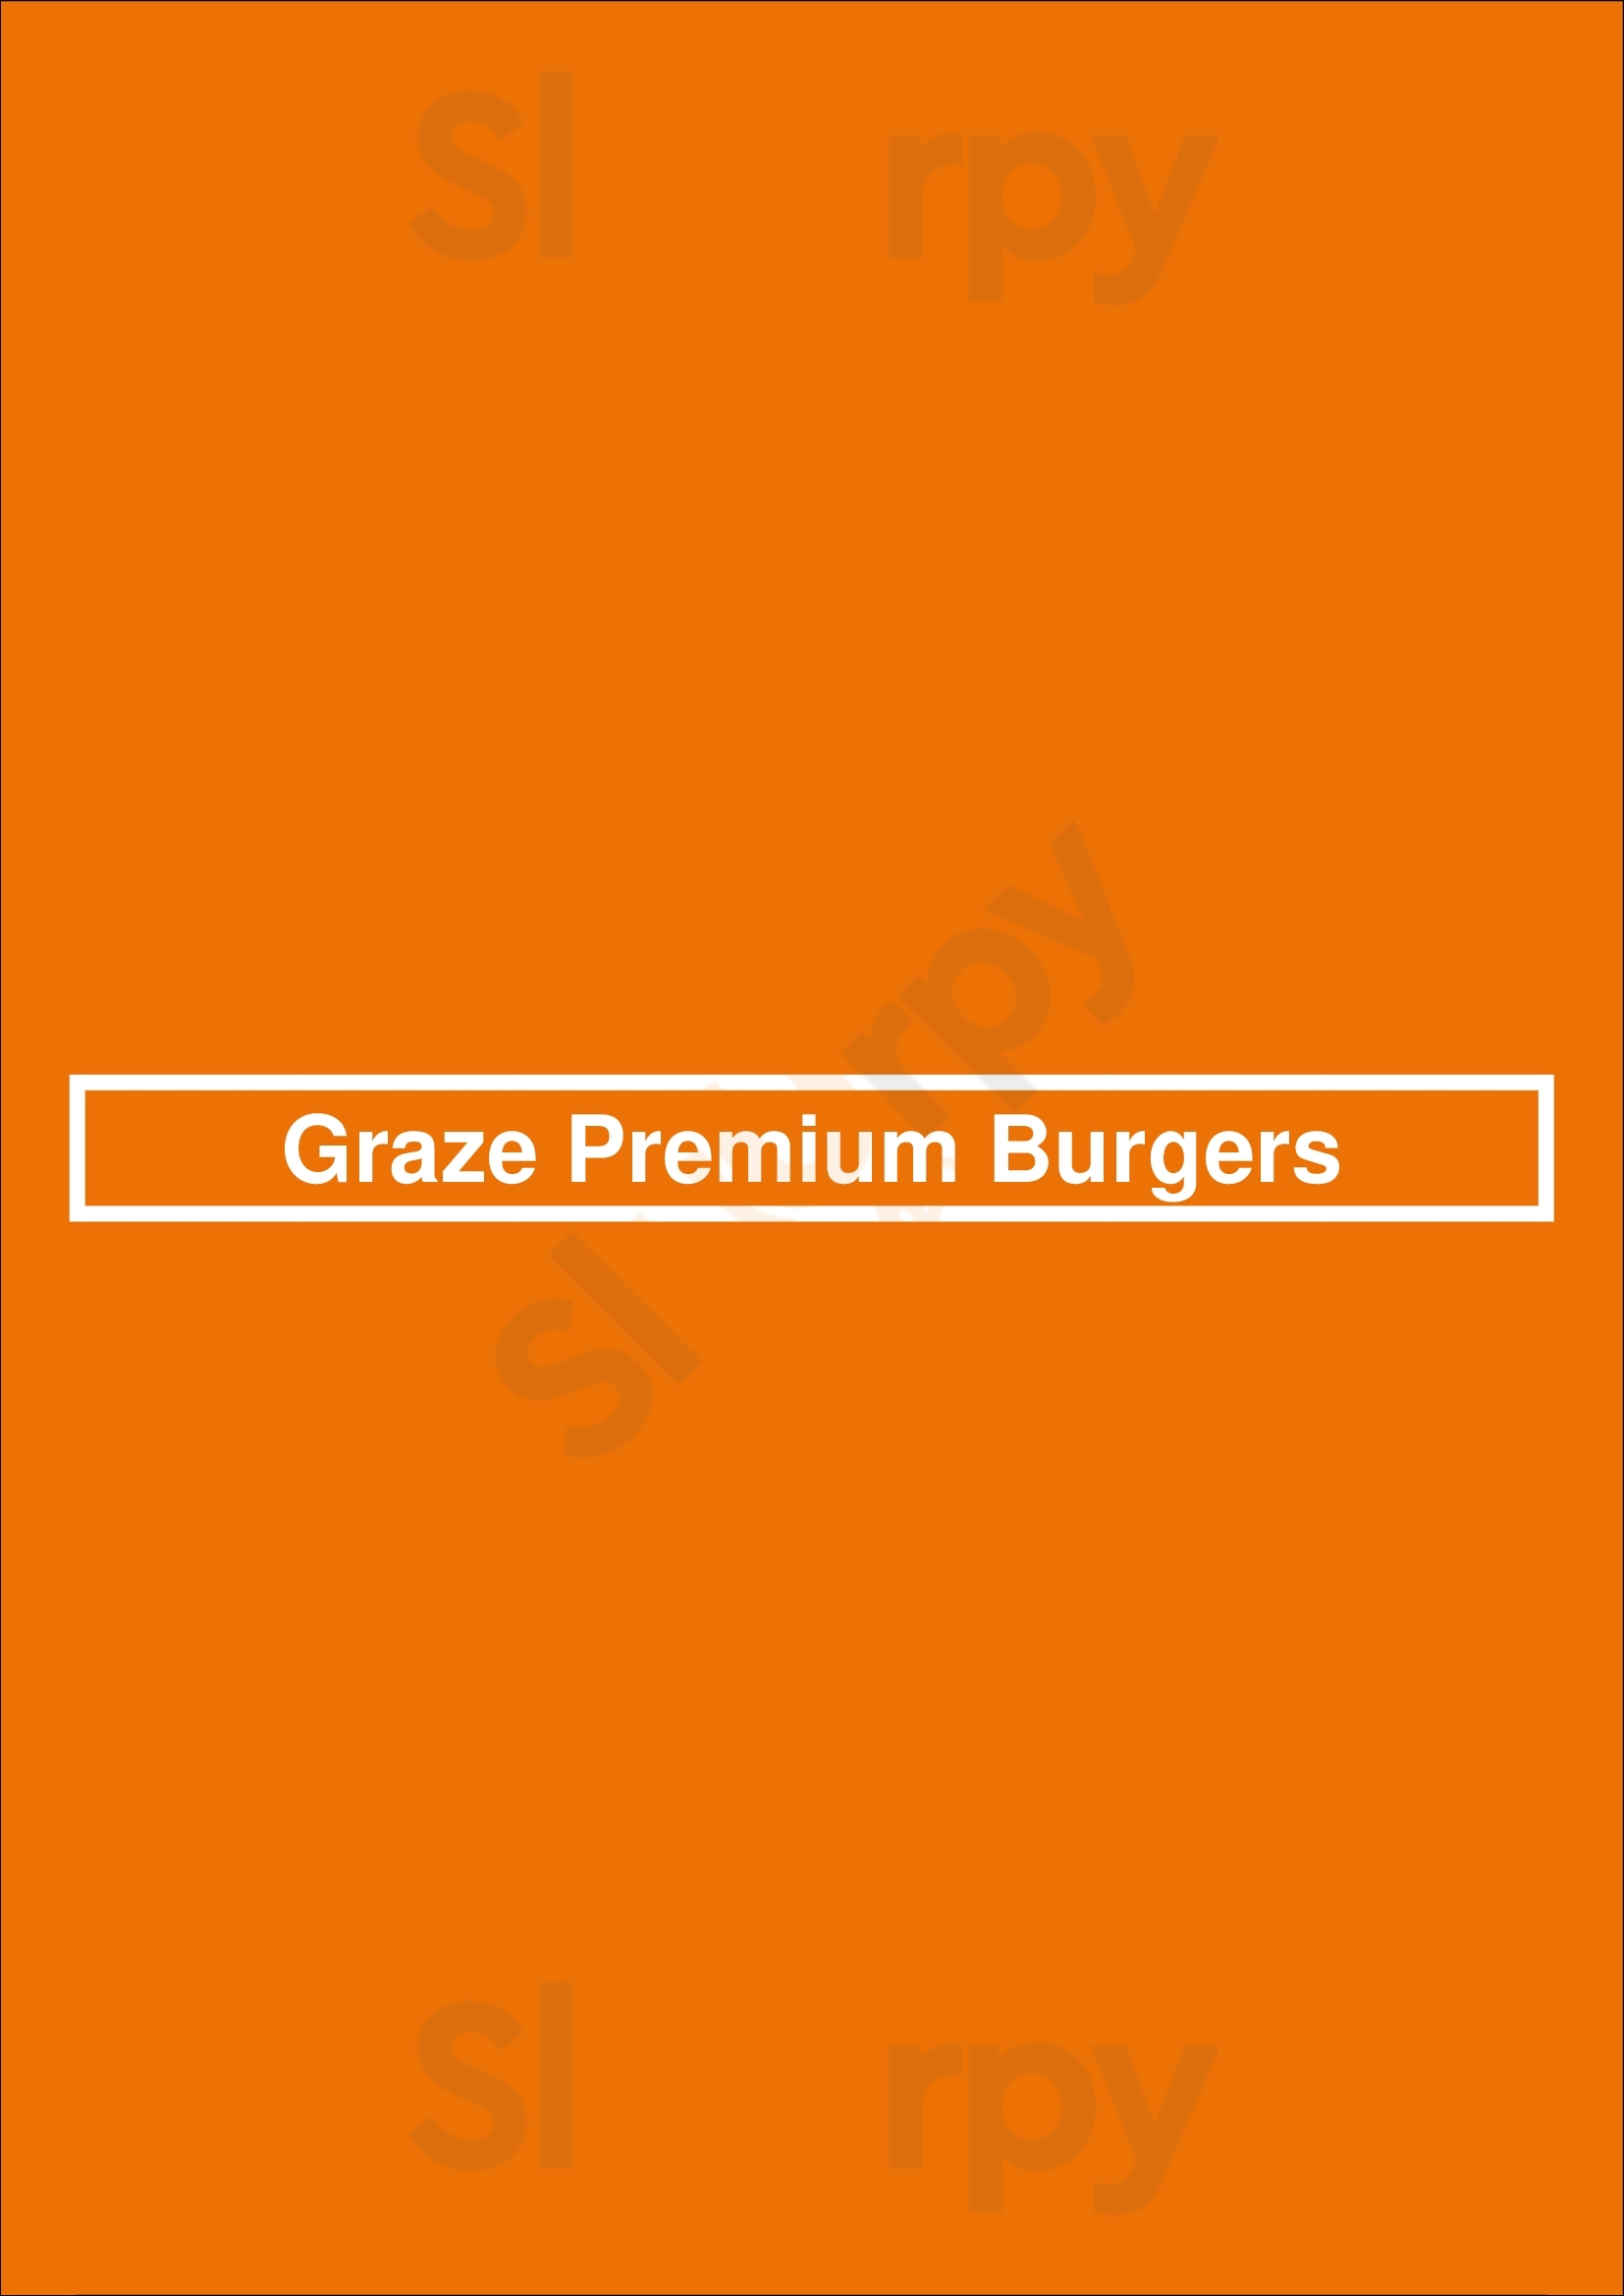 Graze Premium Burgers Tucson Menu - 1